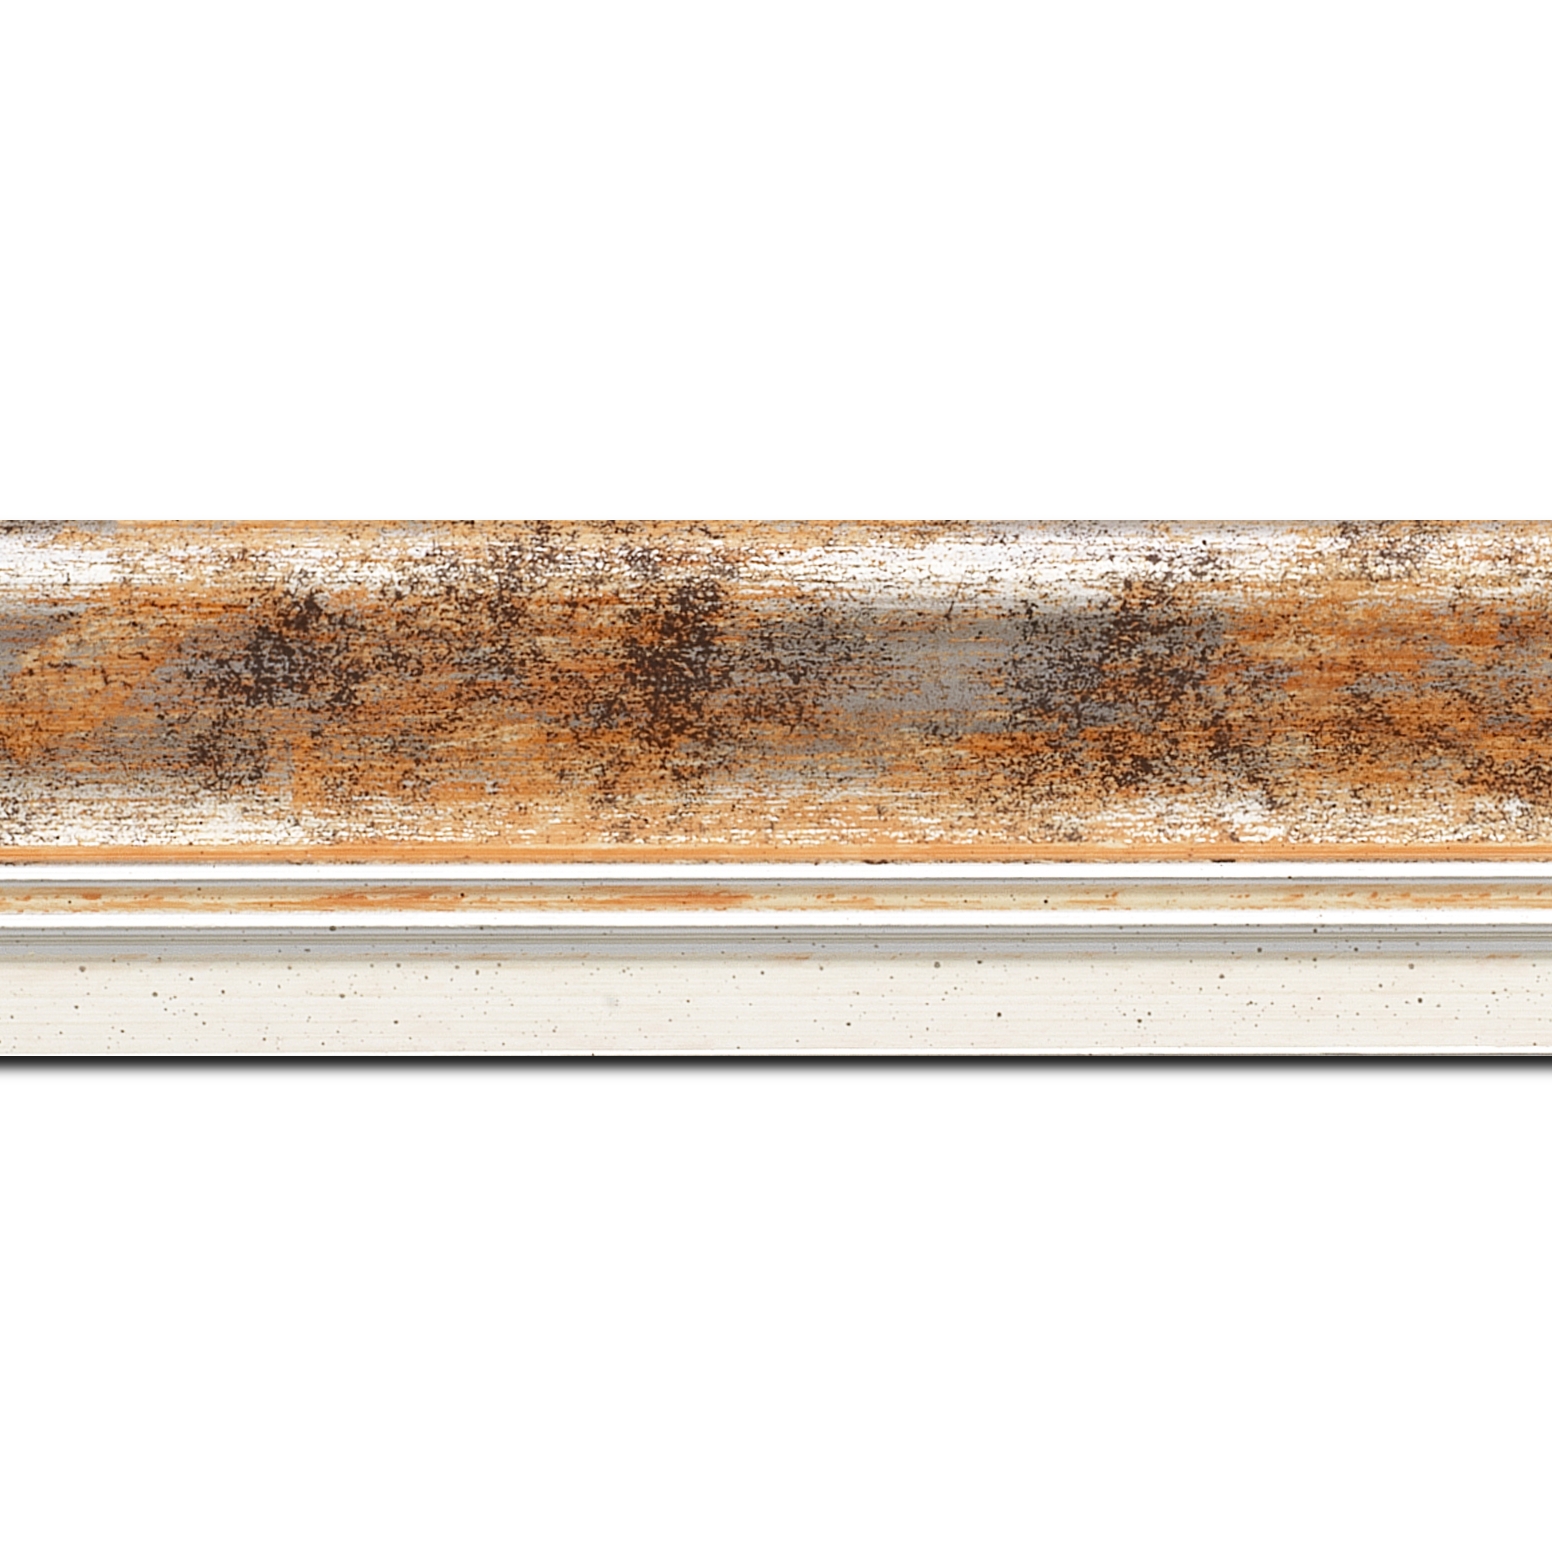 Baguette longueur 1.40m bois profil incurvé largeur 5.7cm de couleur orange fond argent marie louise blanche mouchetée filet argent intégré